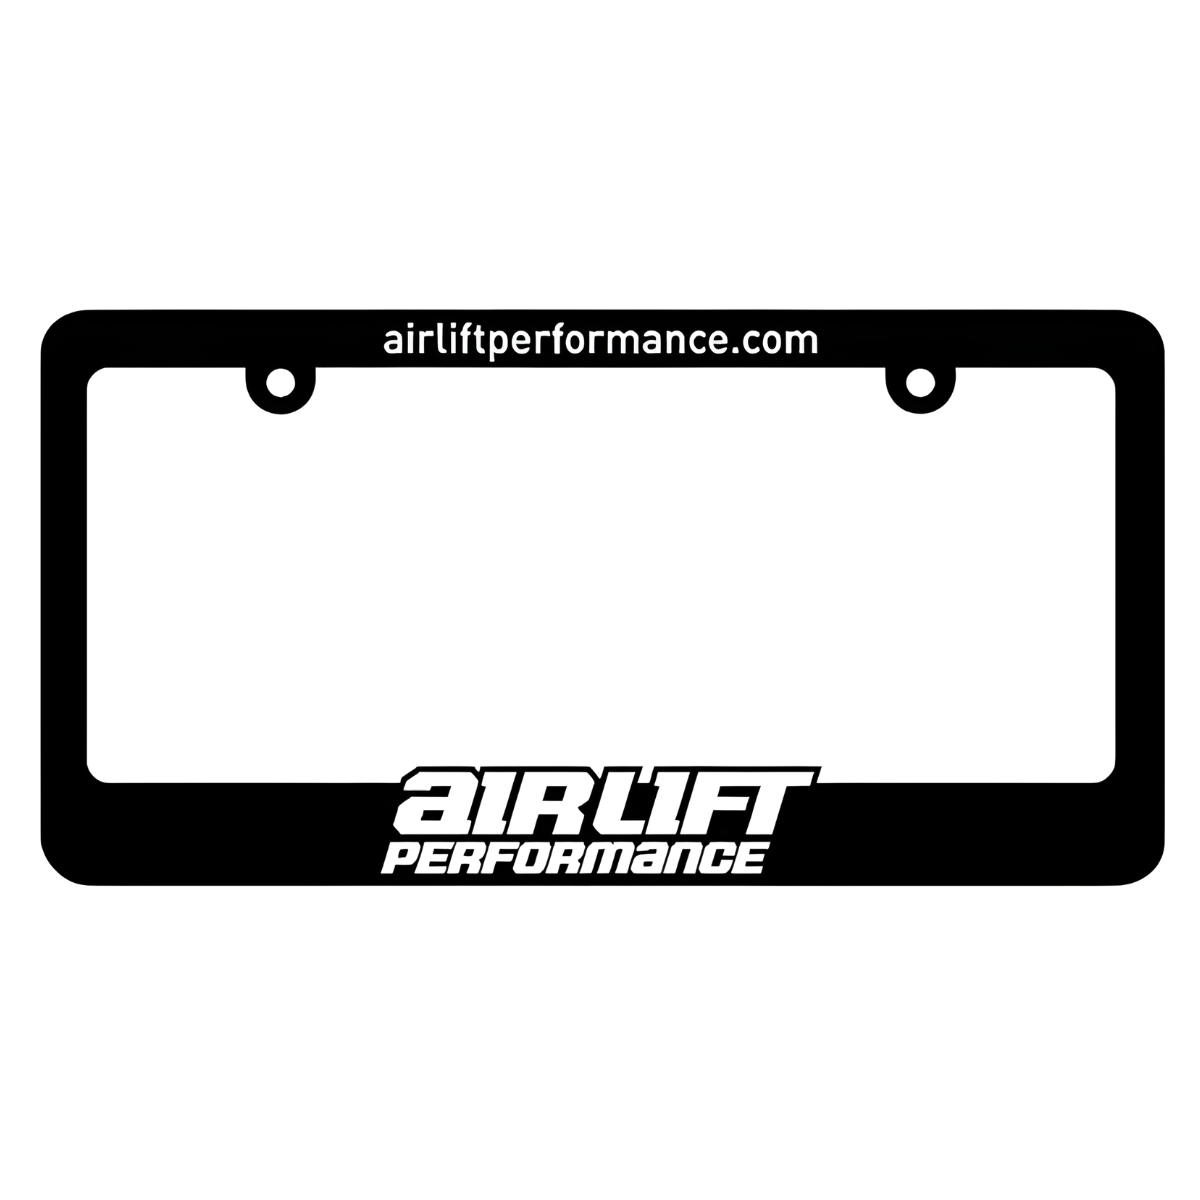 Air Lift Performance 00624 Air Lift Performance License Plate Frame